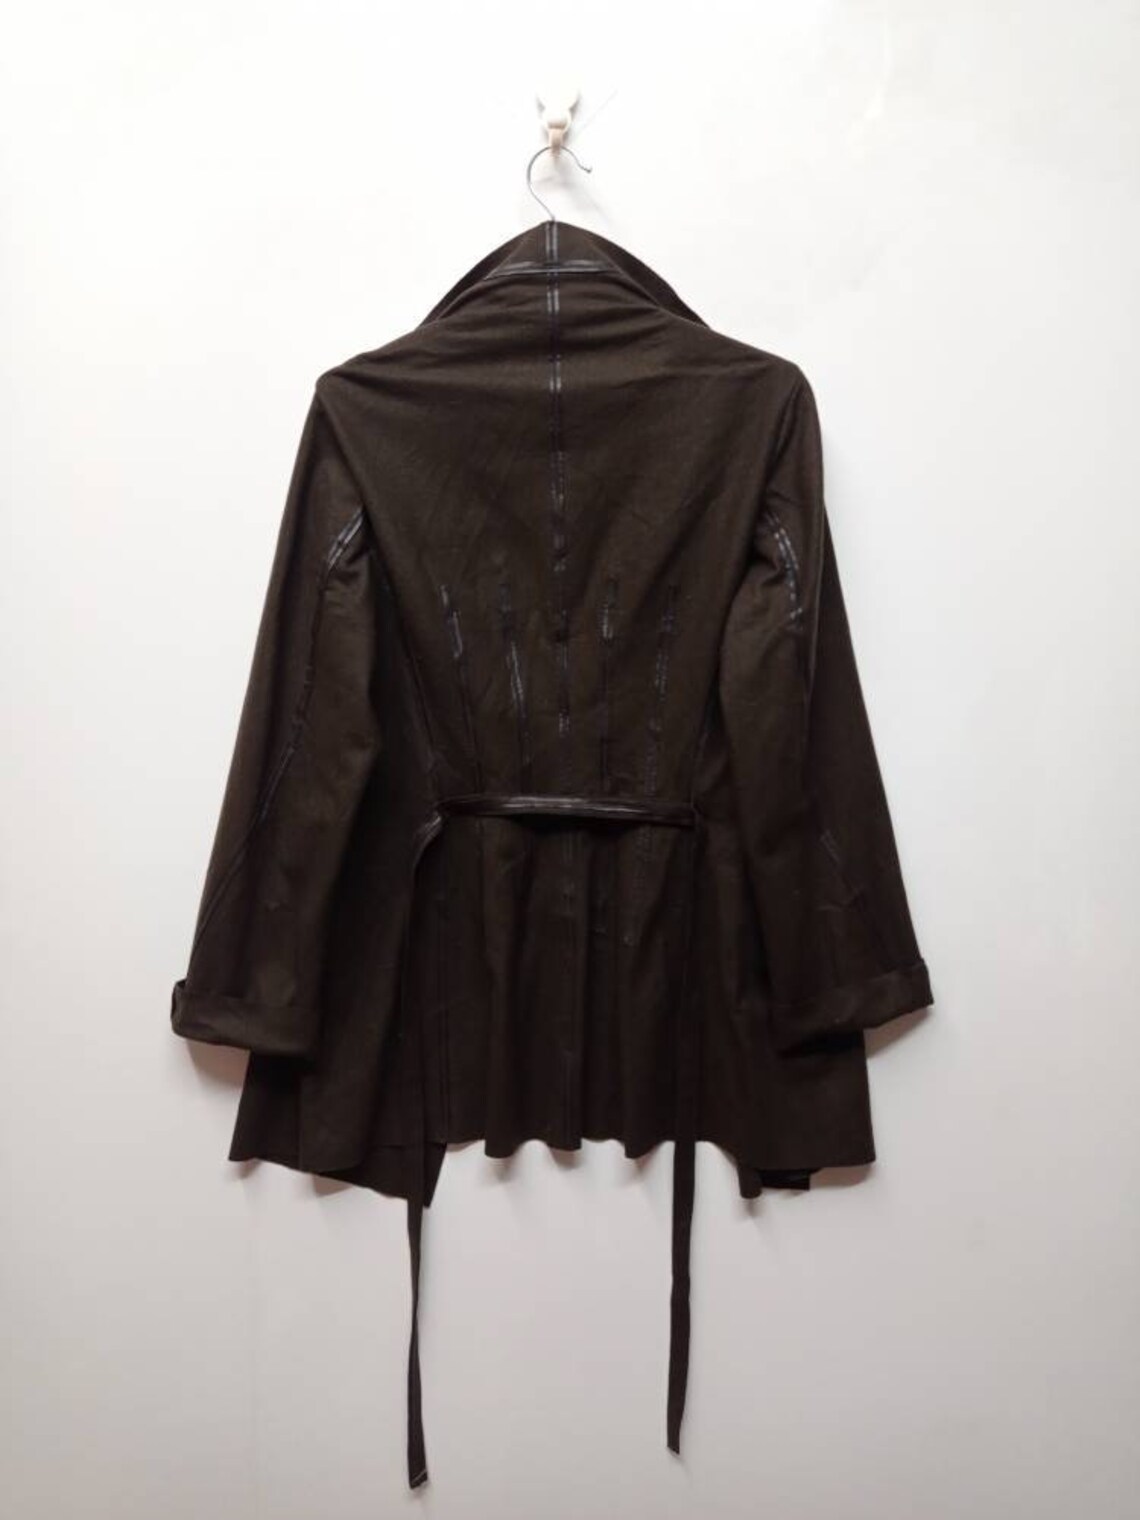 Vintage Avantgarde Tomaso Stefanelli Coat Jacket Cyberpunk | Etsy